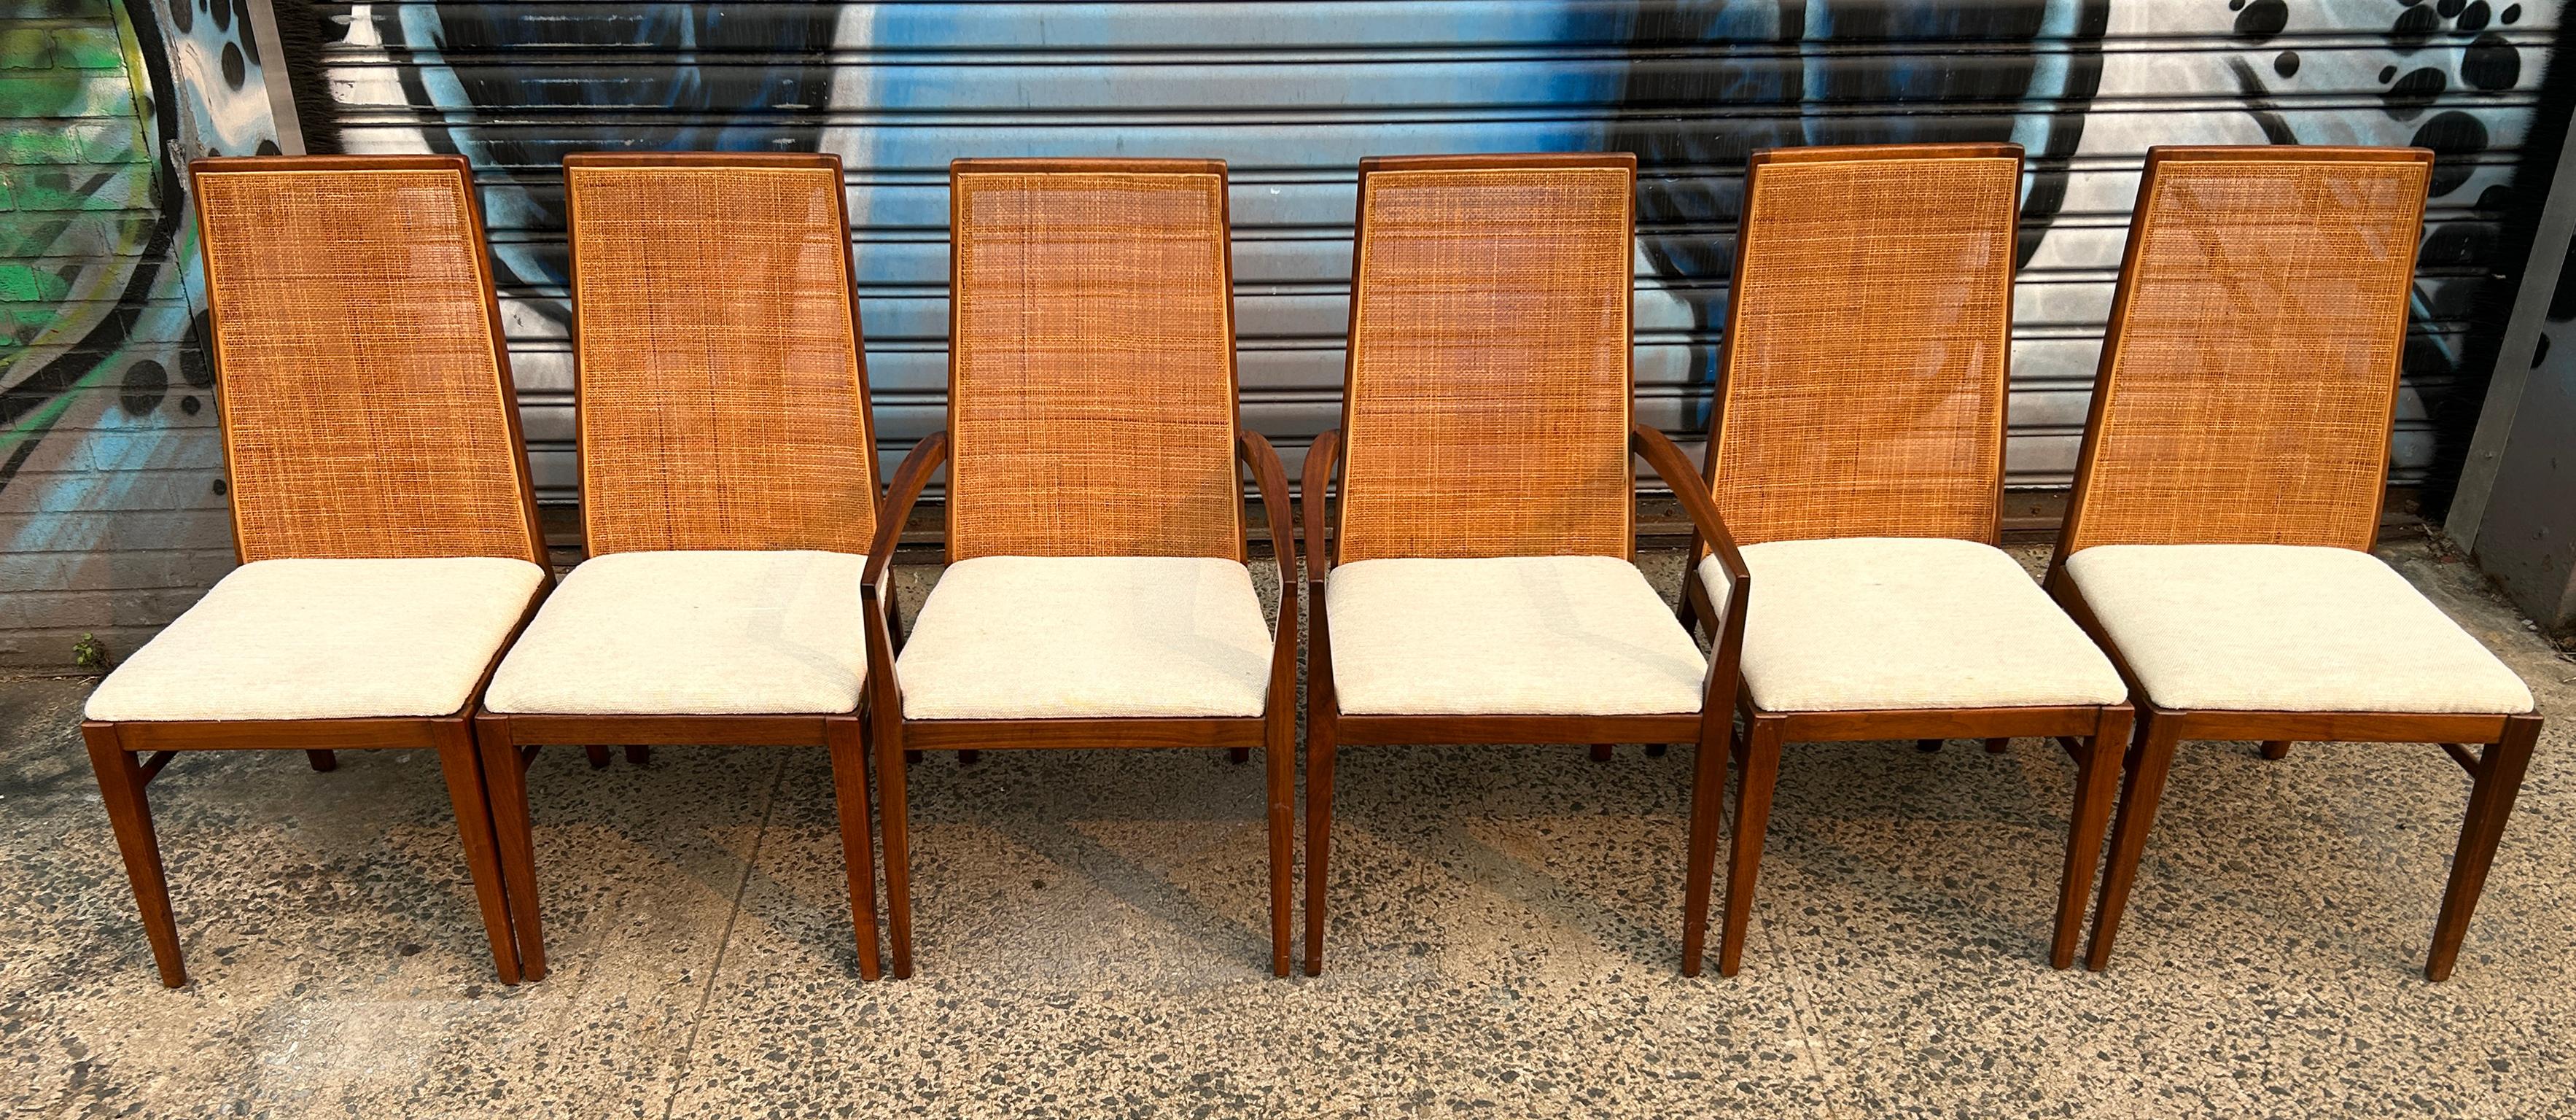 Schöne Reihe von 6 Mid Century Modern verjüngt hohe Rückenlehne Rohr Esszimmerstühle. (4) der Stuhl haben keine Arme und (2) Stühle haben Arme - alle haben alle die gleiche weiße Wolle gewebt Polsterung. Schönes einfaches Design, sehr komfortabel.